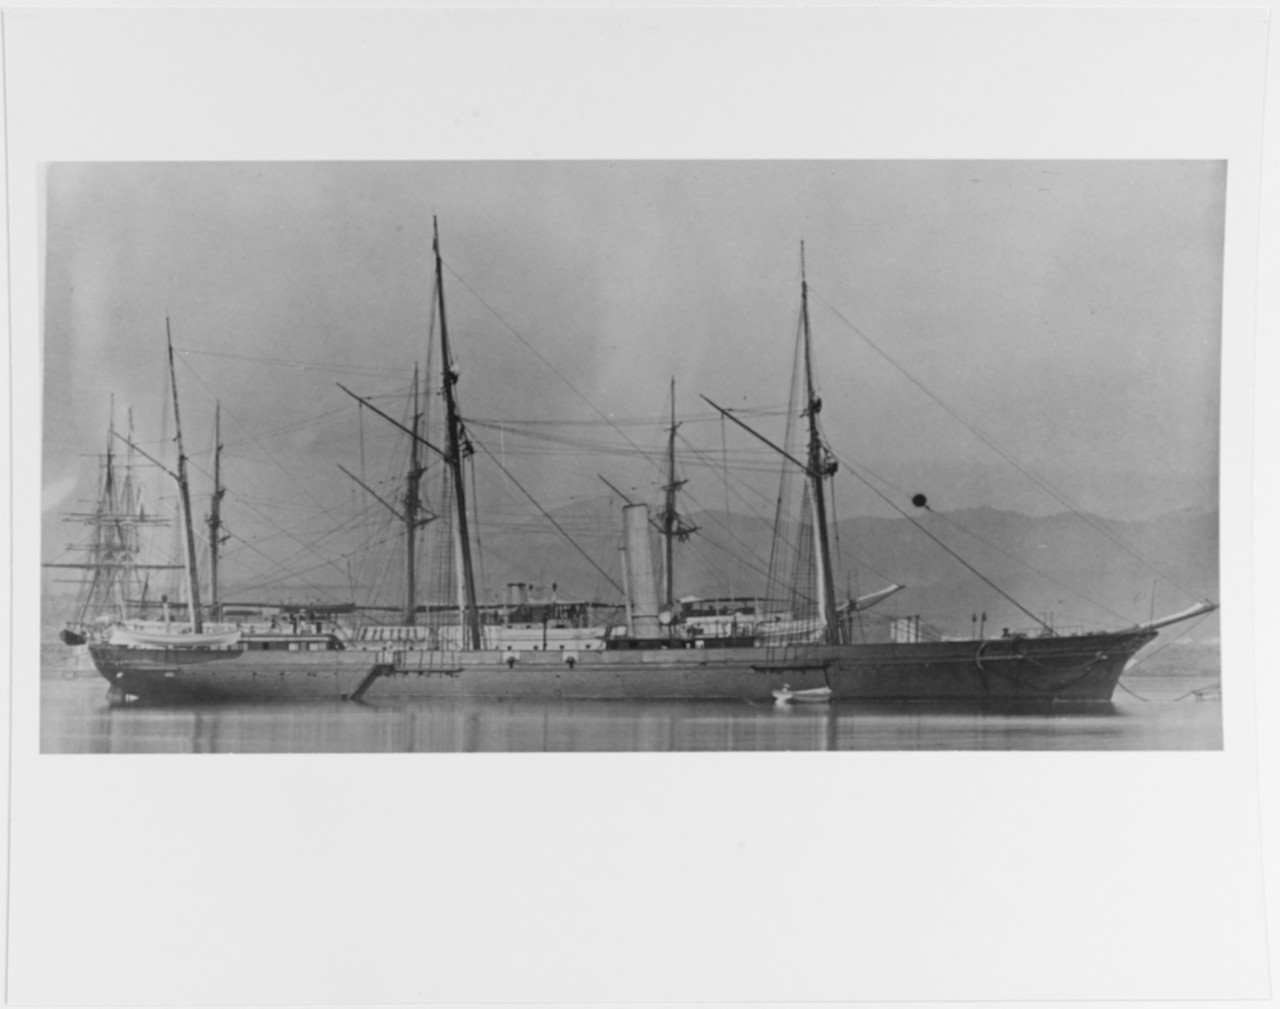 KLEBER (French Cruiser, 1859-79)